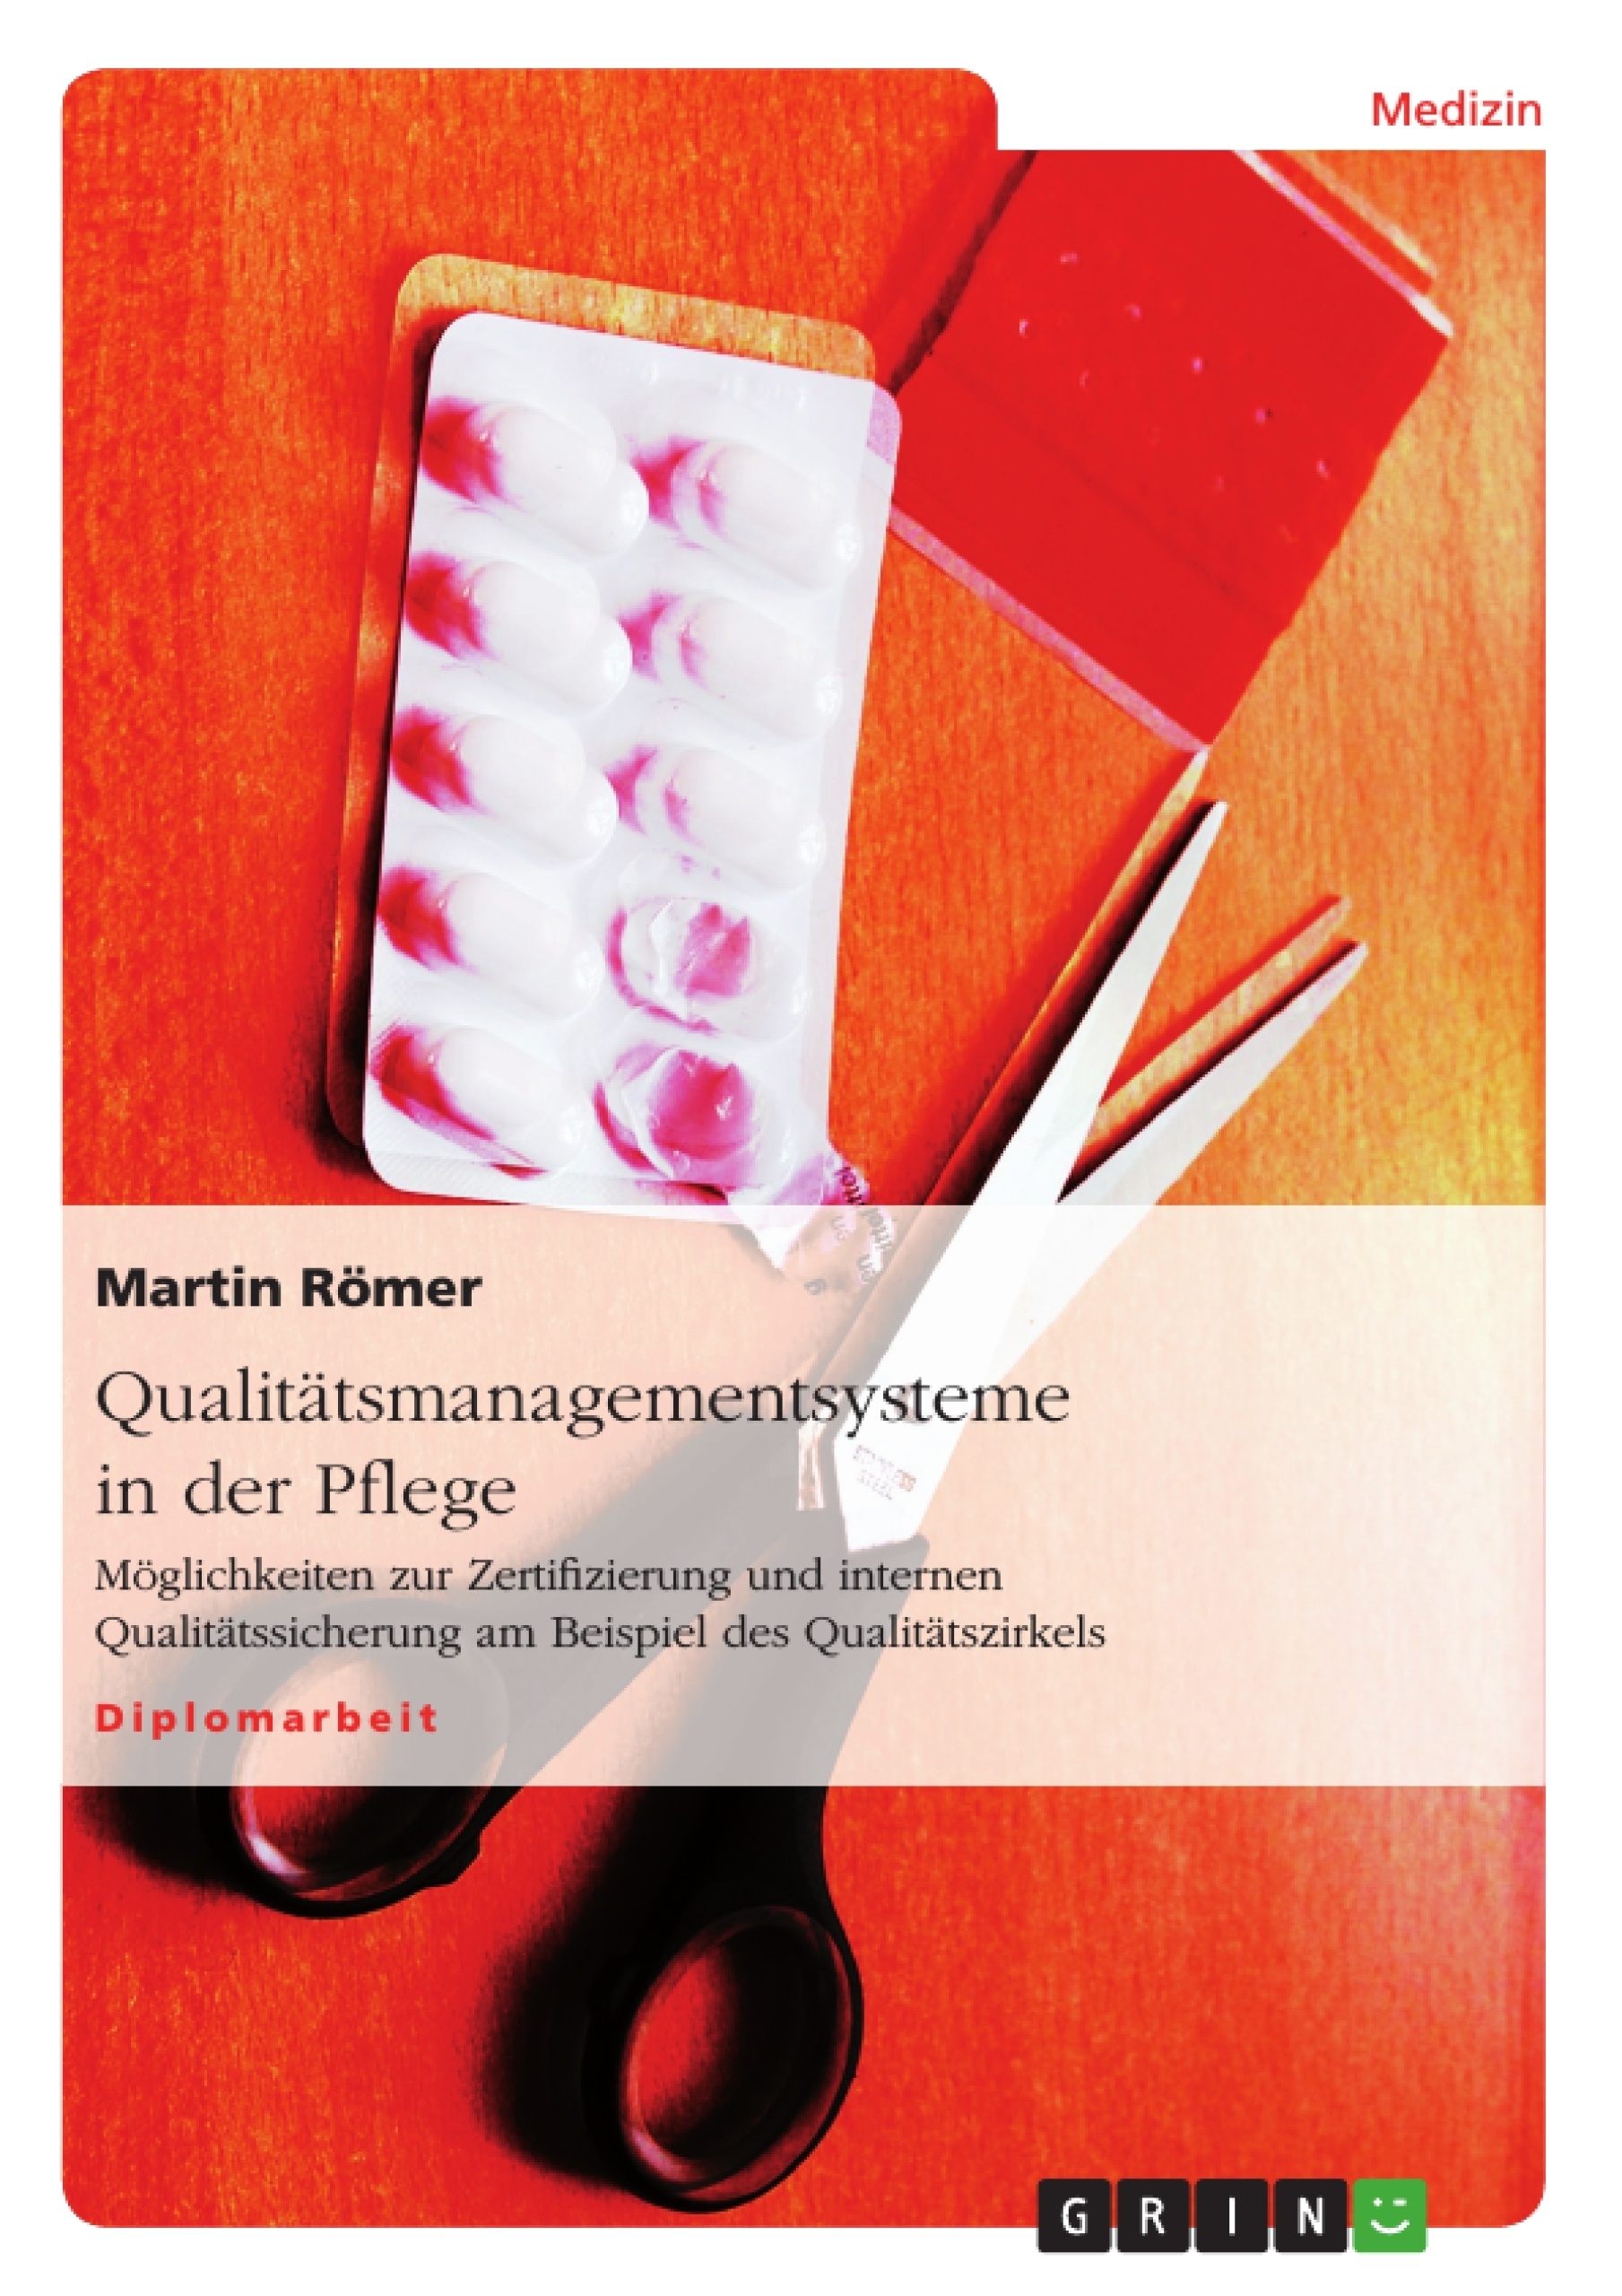 Title: Qualitätsmanagementsysteme in der Pflege